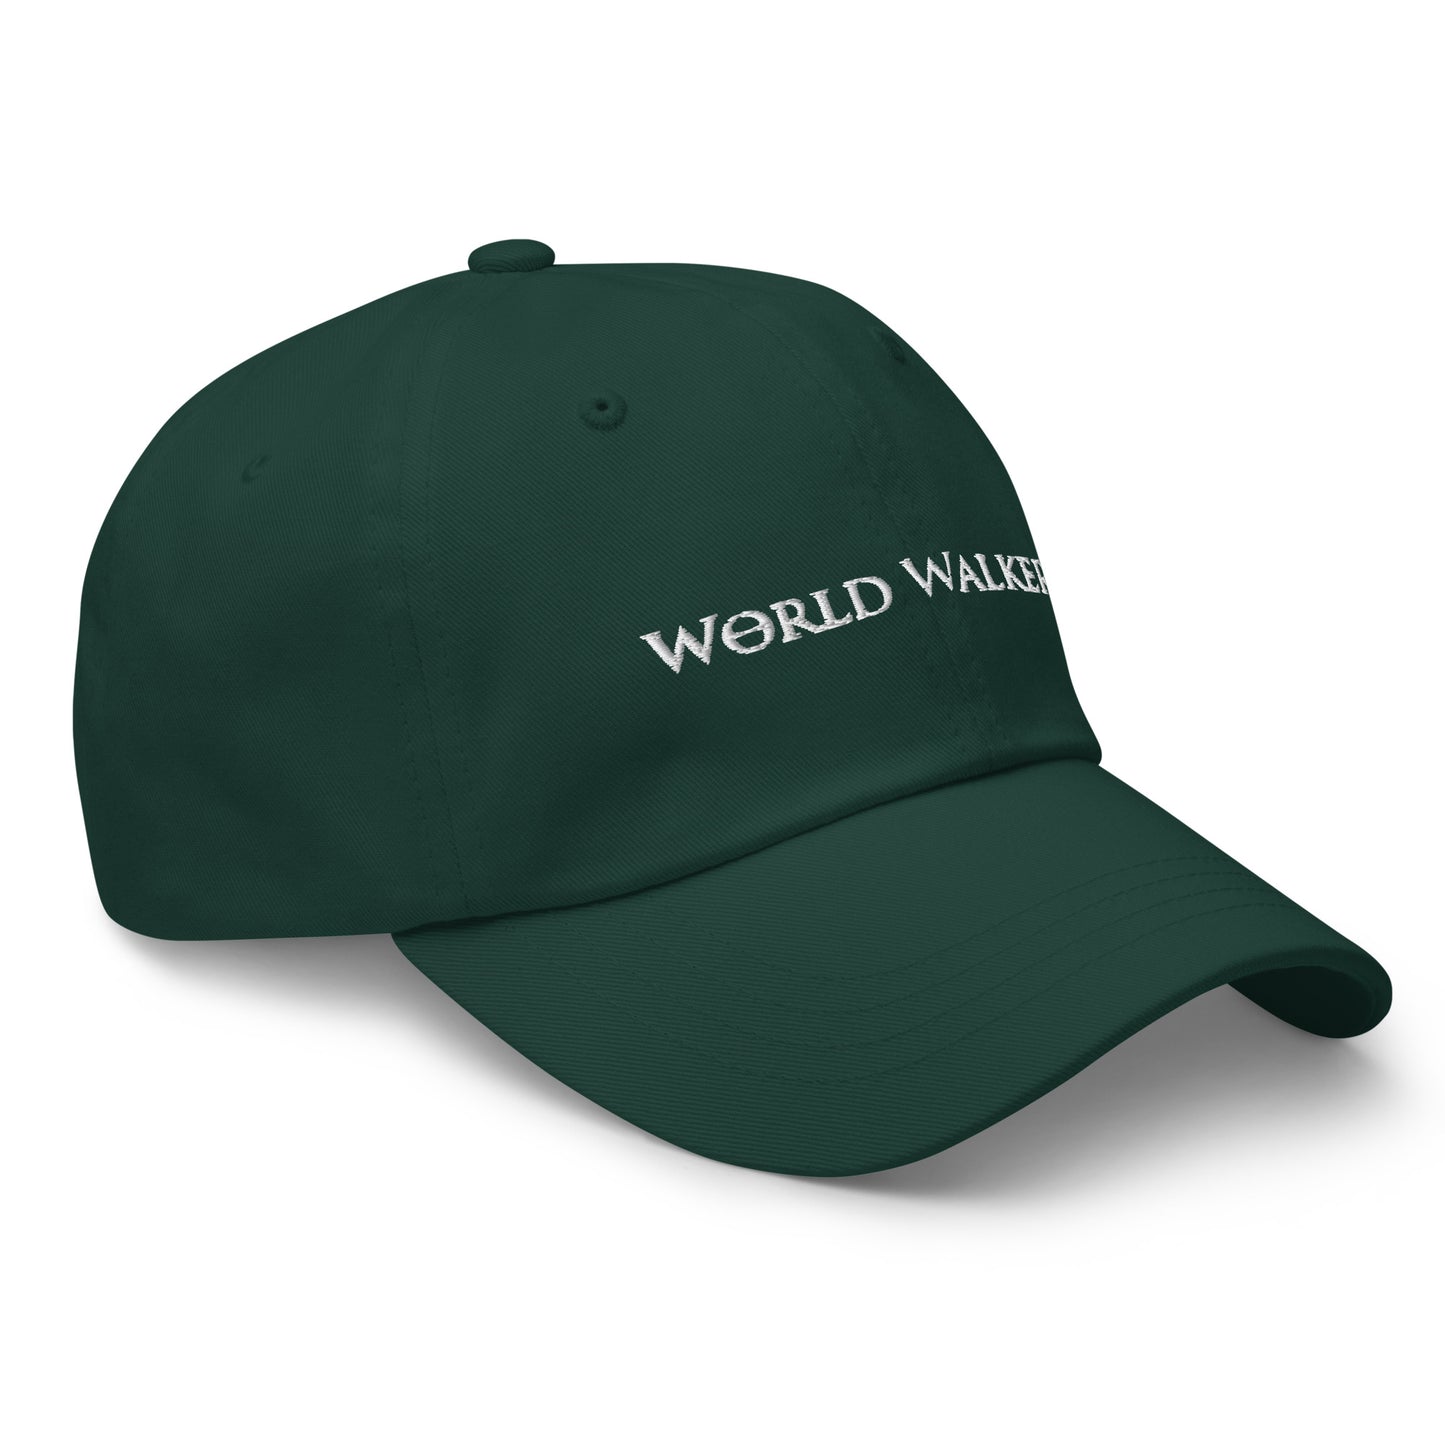 World Walkerz Hat